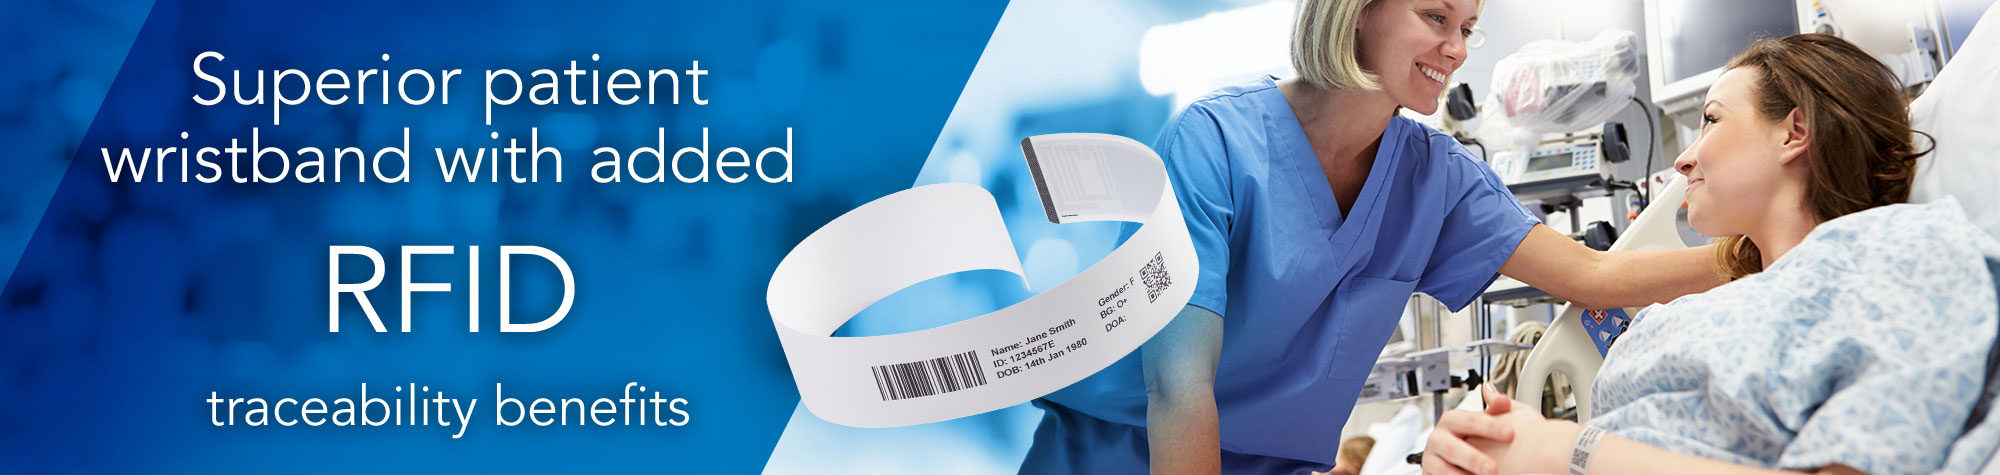 Un brazalete para pacientes con beneficios adicionales de trazabilidad RFID